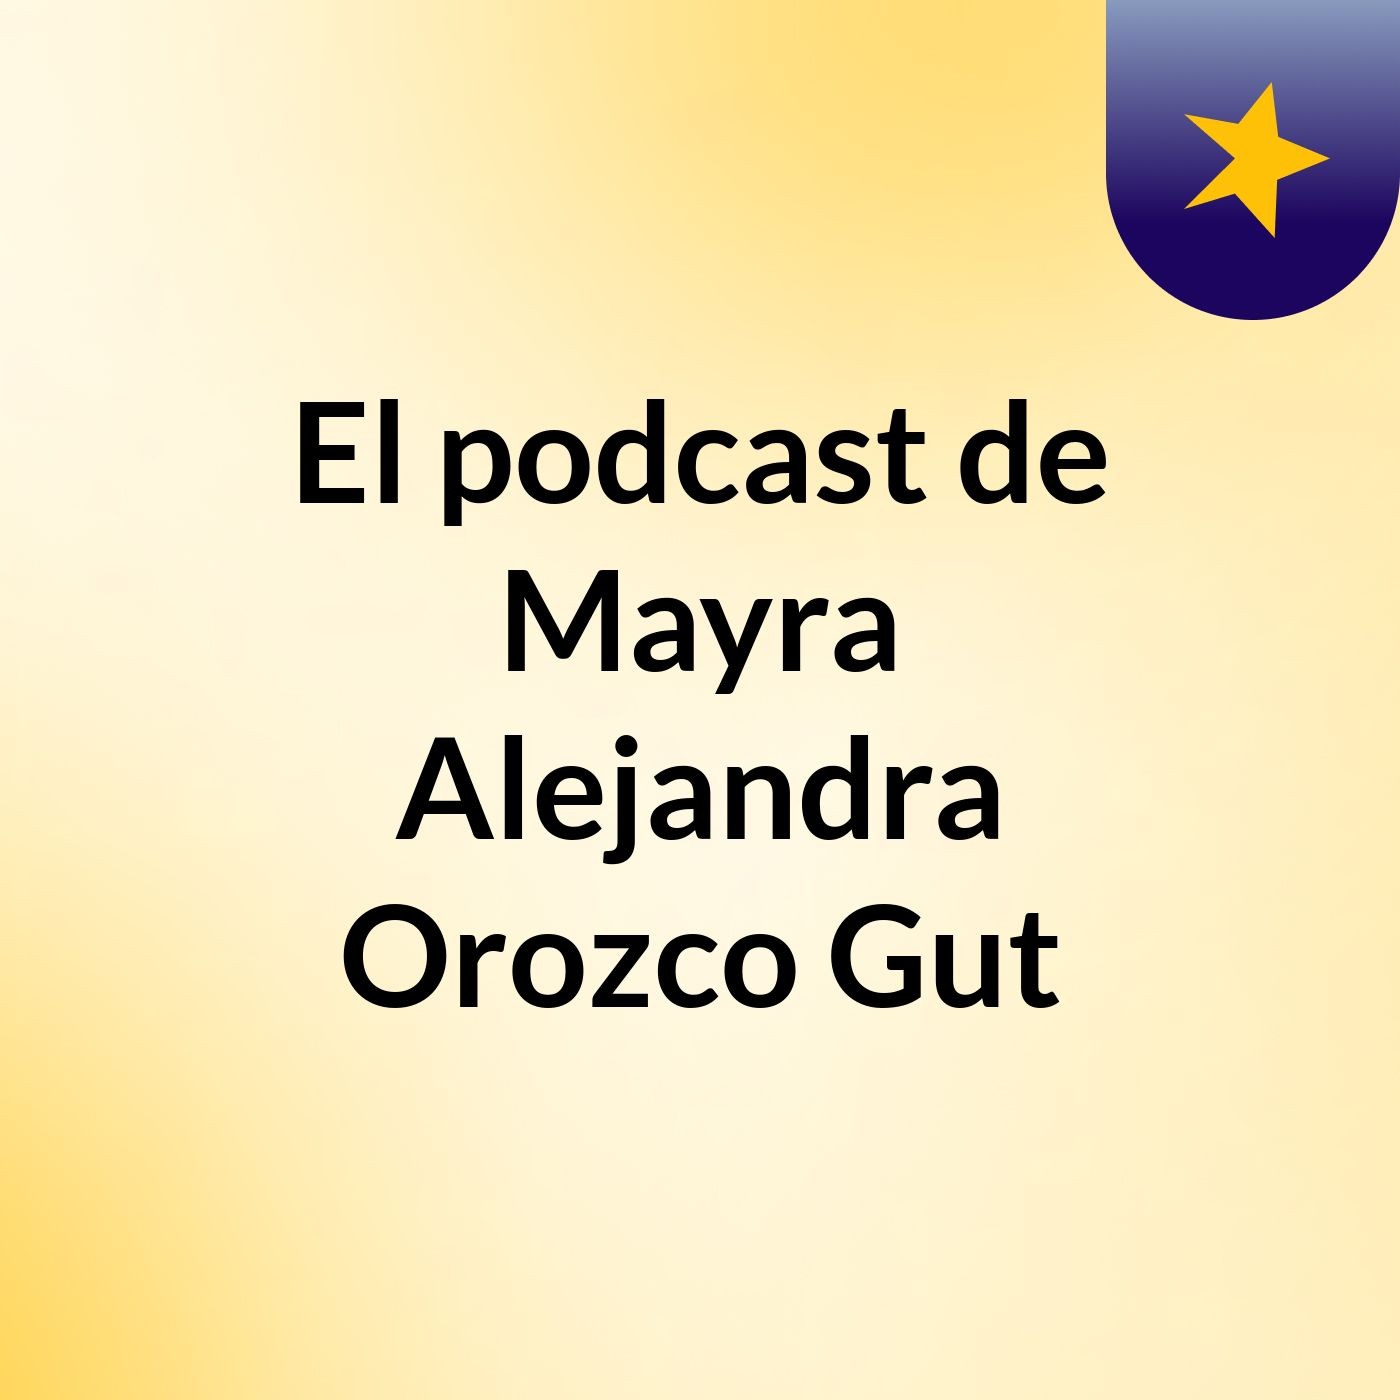 El podcast de Mayra Alejandra Orozco Gut